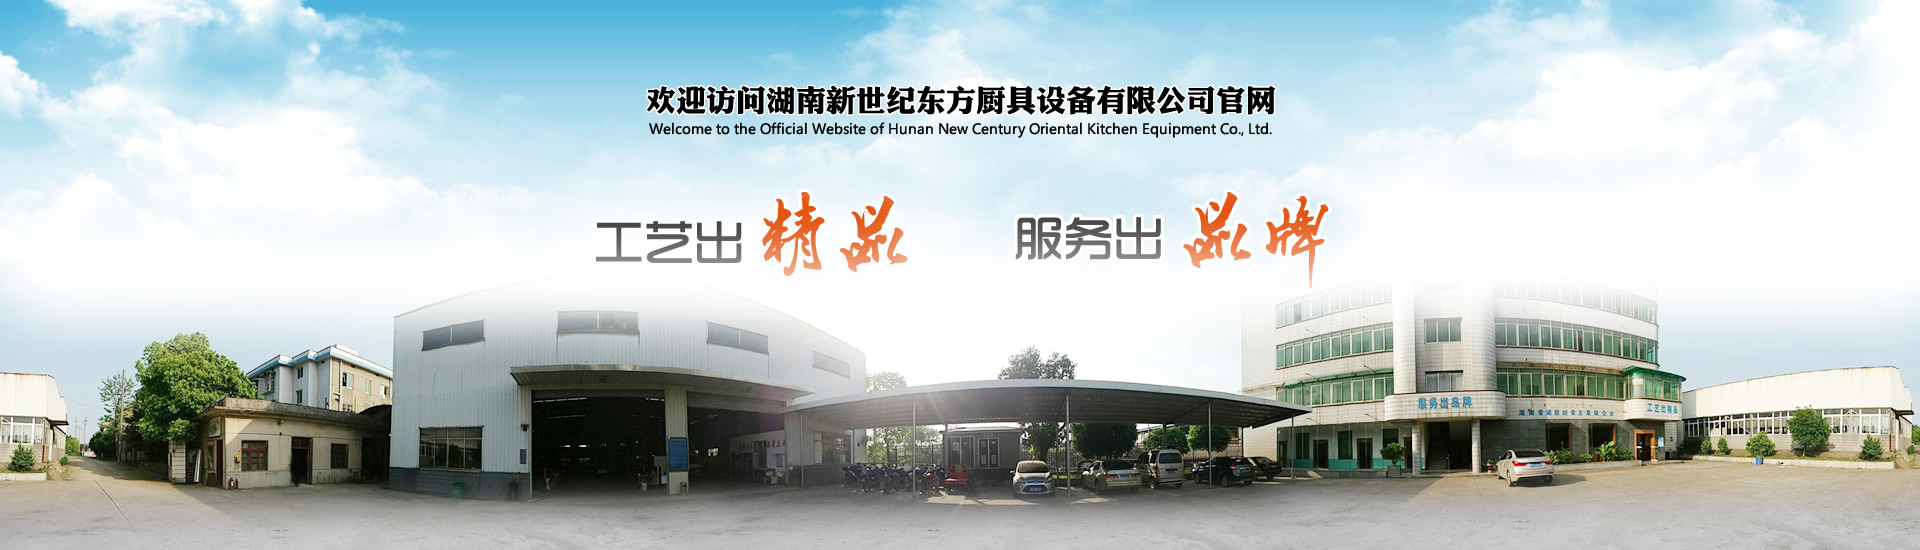 欢迎访问湖南新世纪东方厨具设备有限公司官方网站